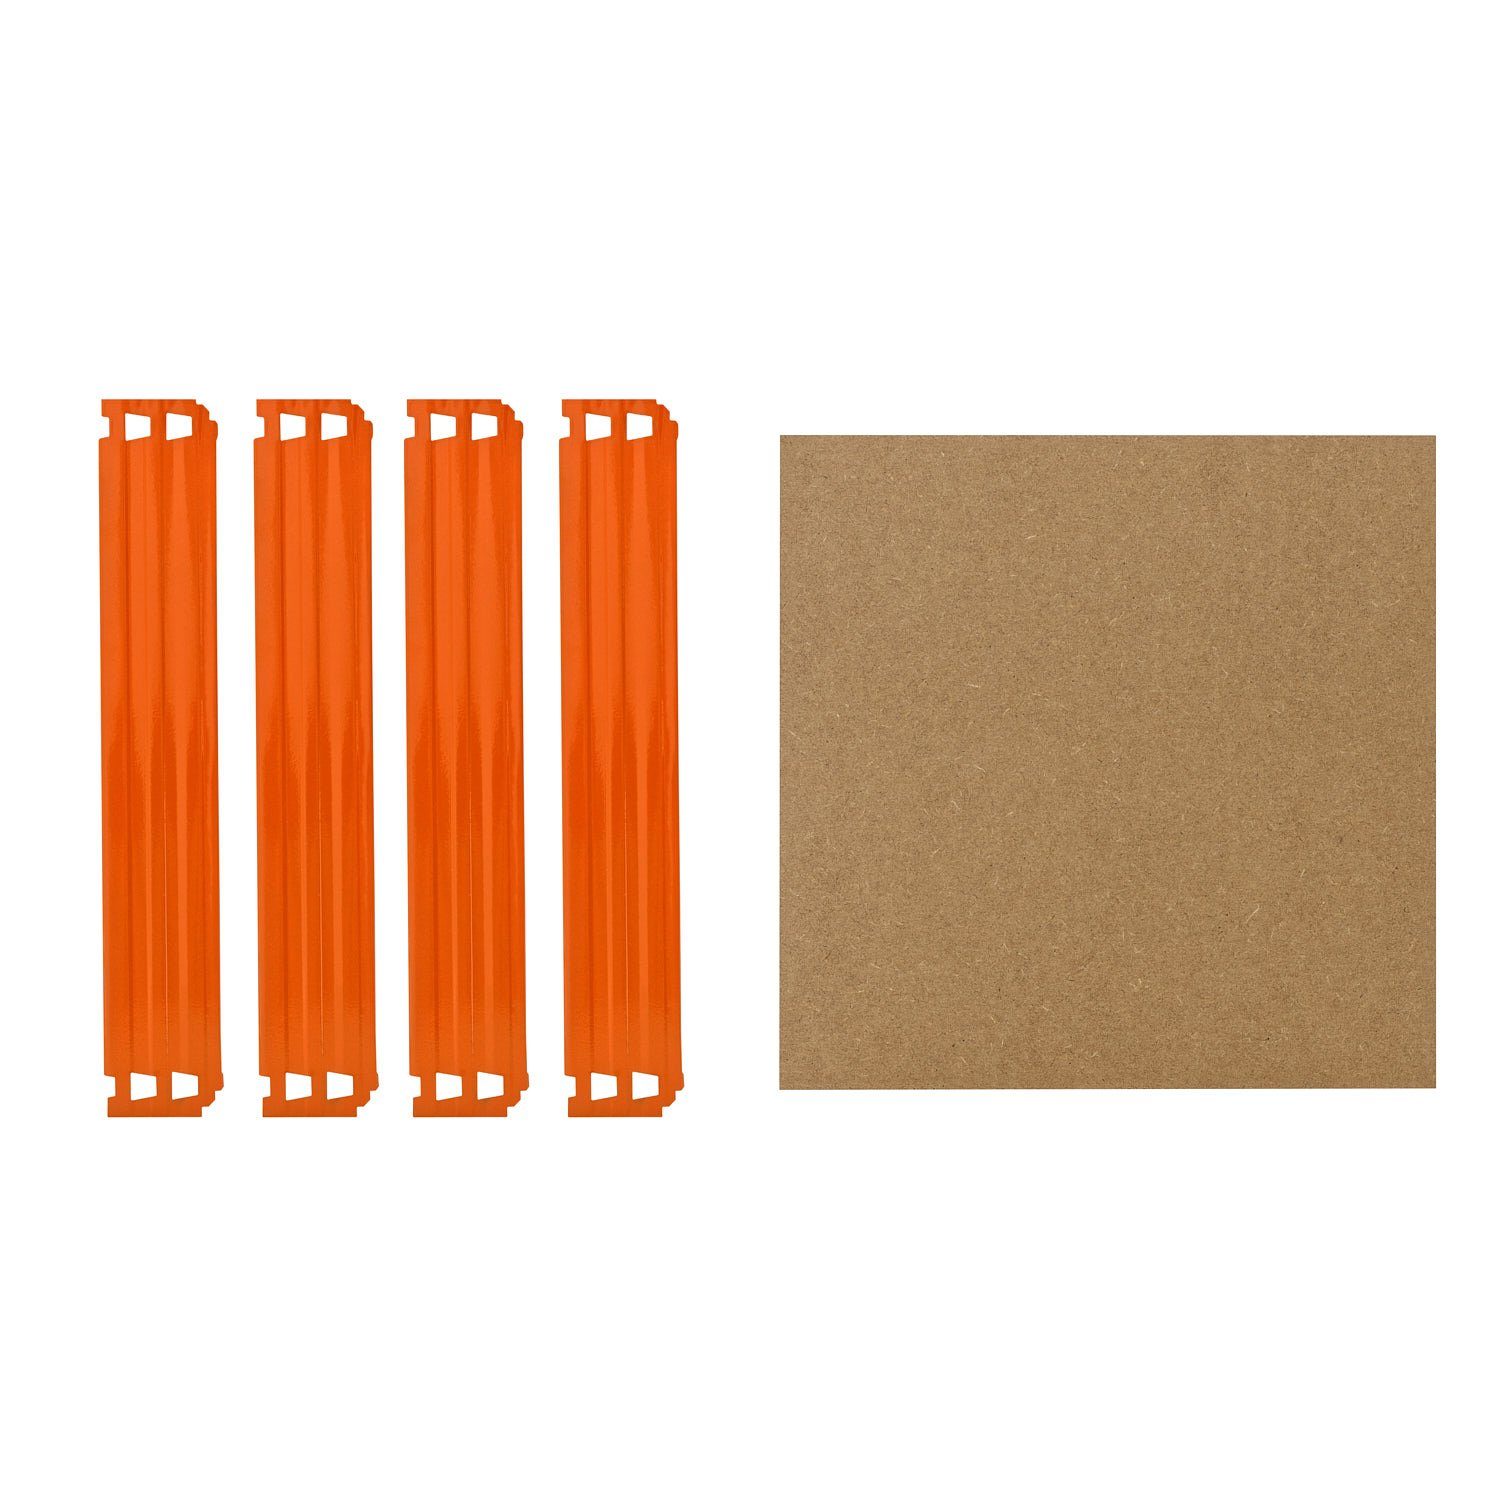 shelfplaza Schwerlastregal PROFI, Komplettes Fachboden-Set für 23x23 cm Steckregale in blau-orange, HDF-Fachboden, zusätzliche Fachböden für Schwerlastregale